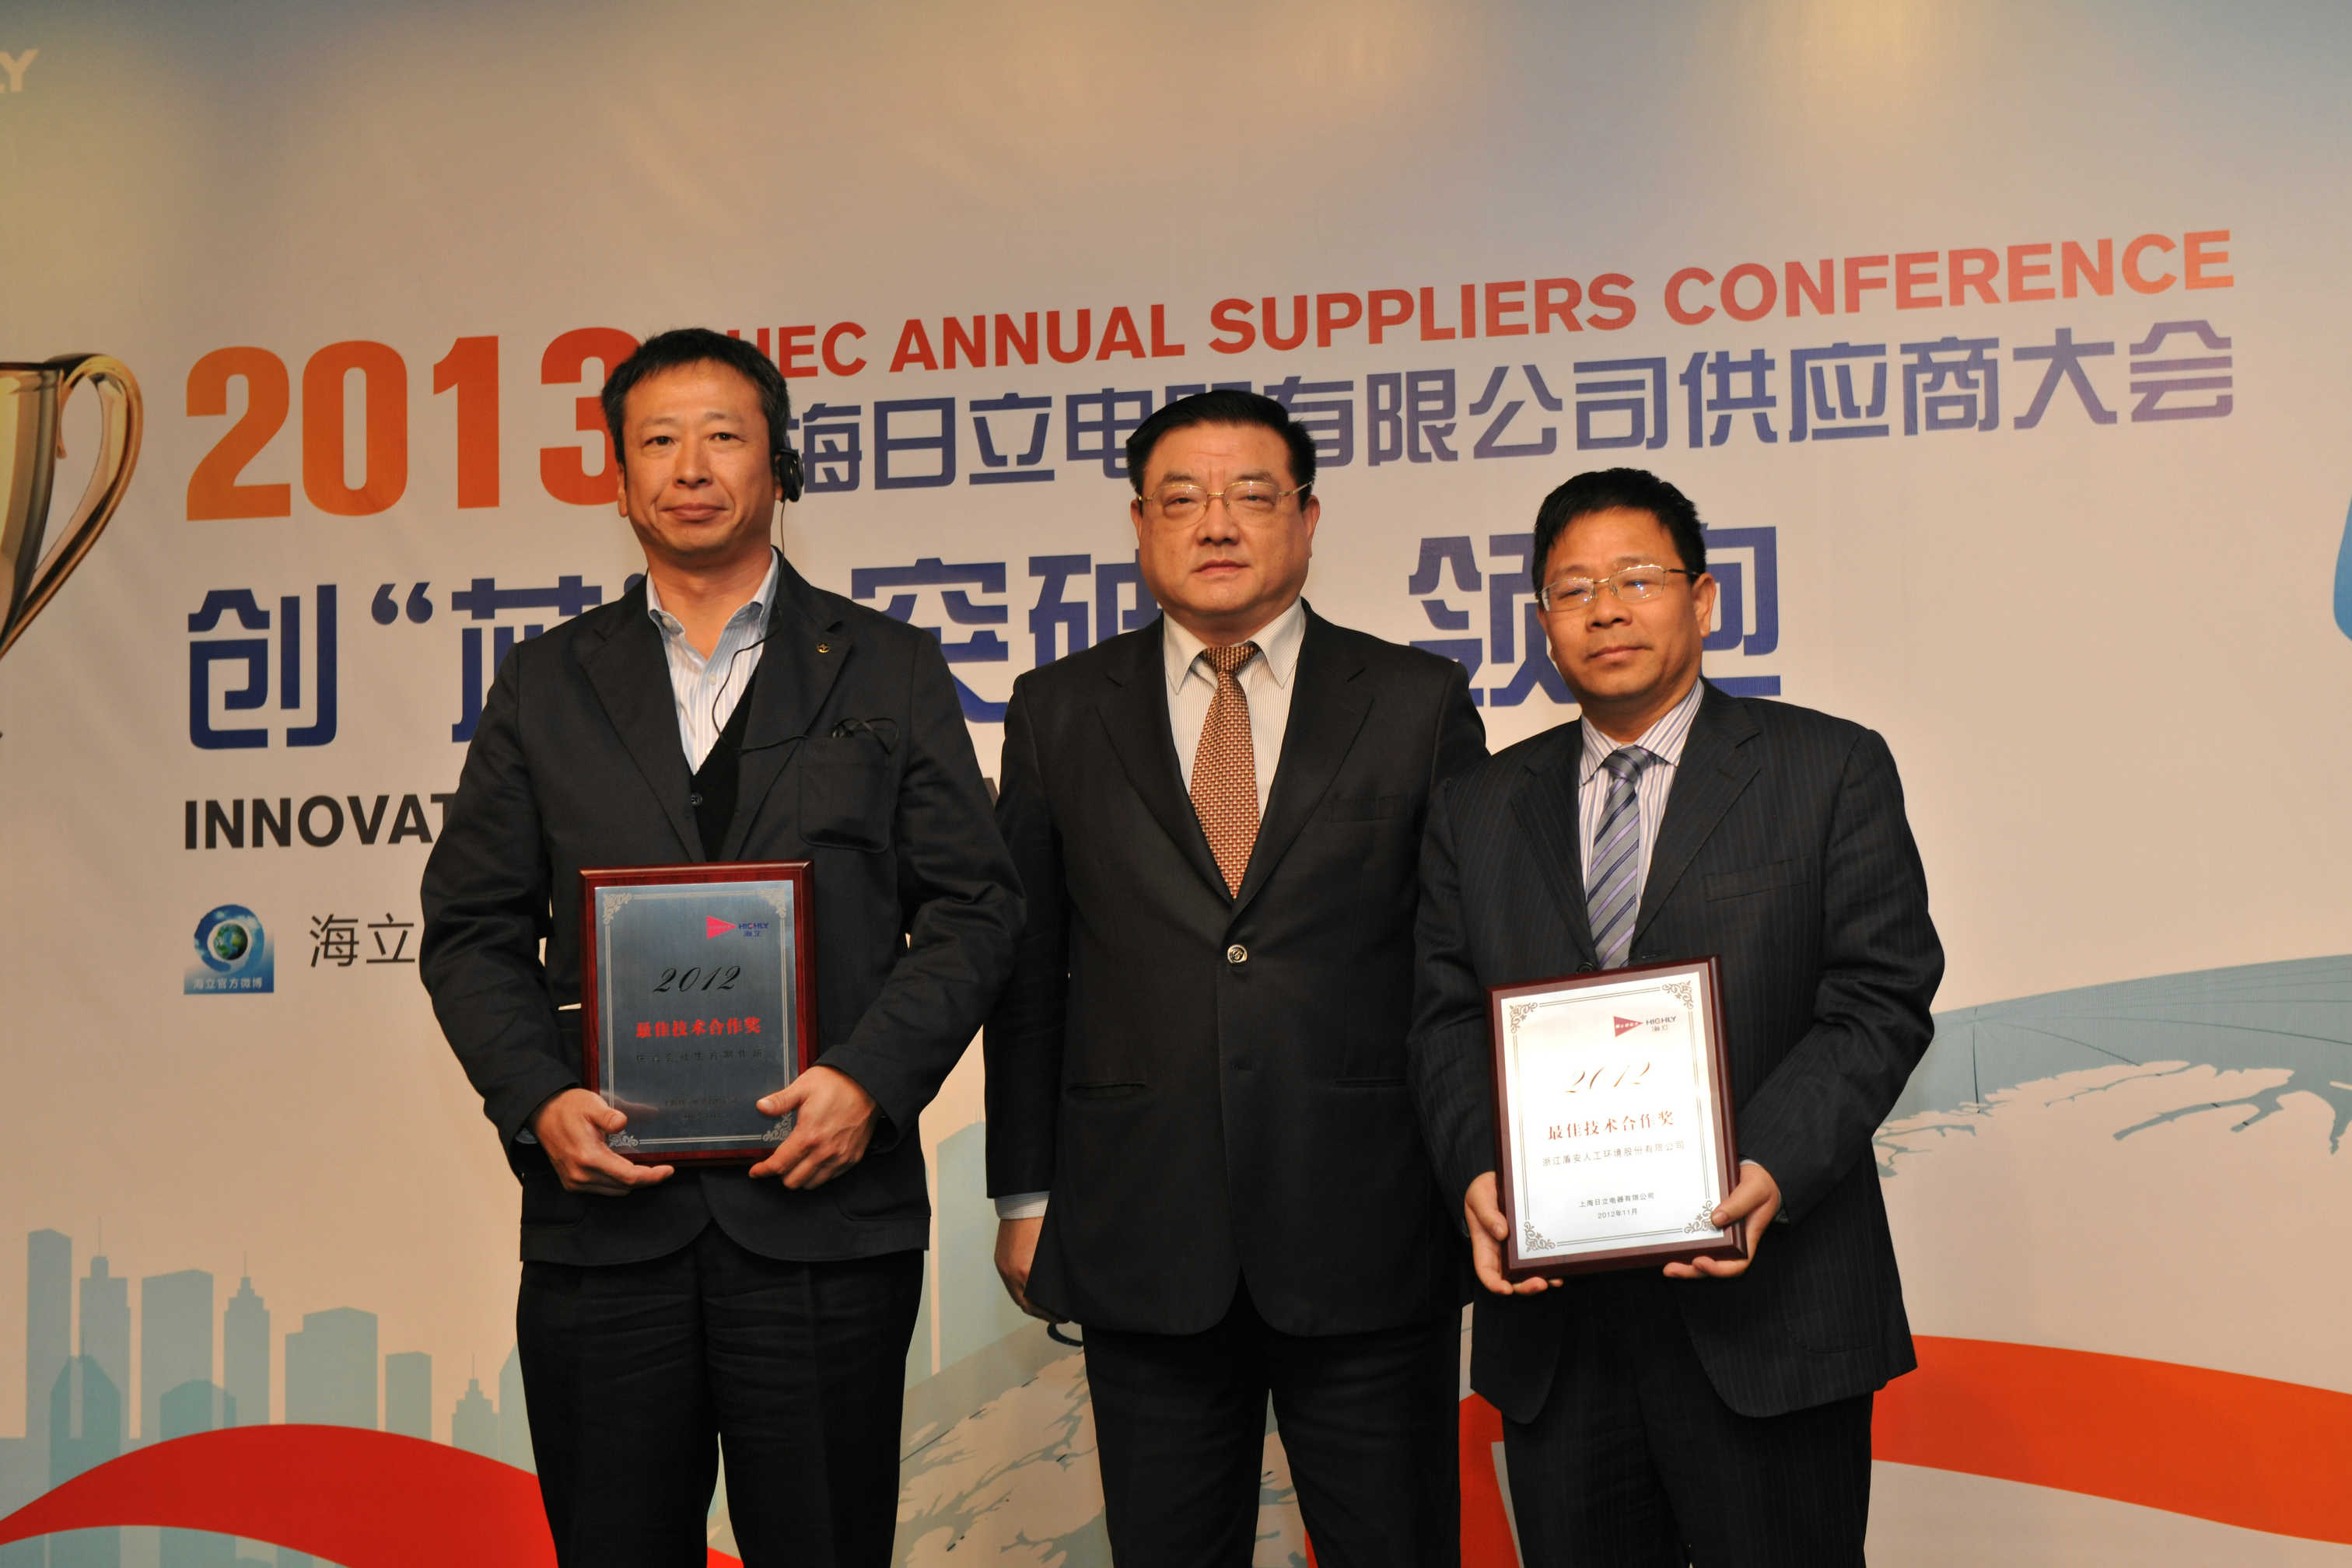 上海日立2013年度供应商大会隆重召开